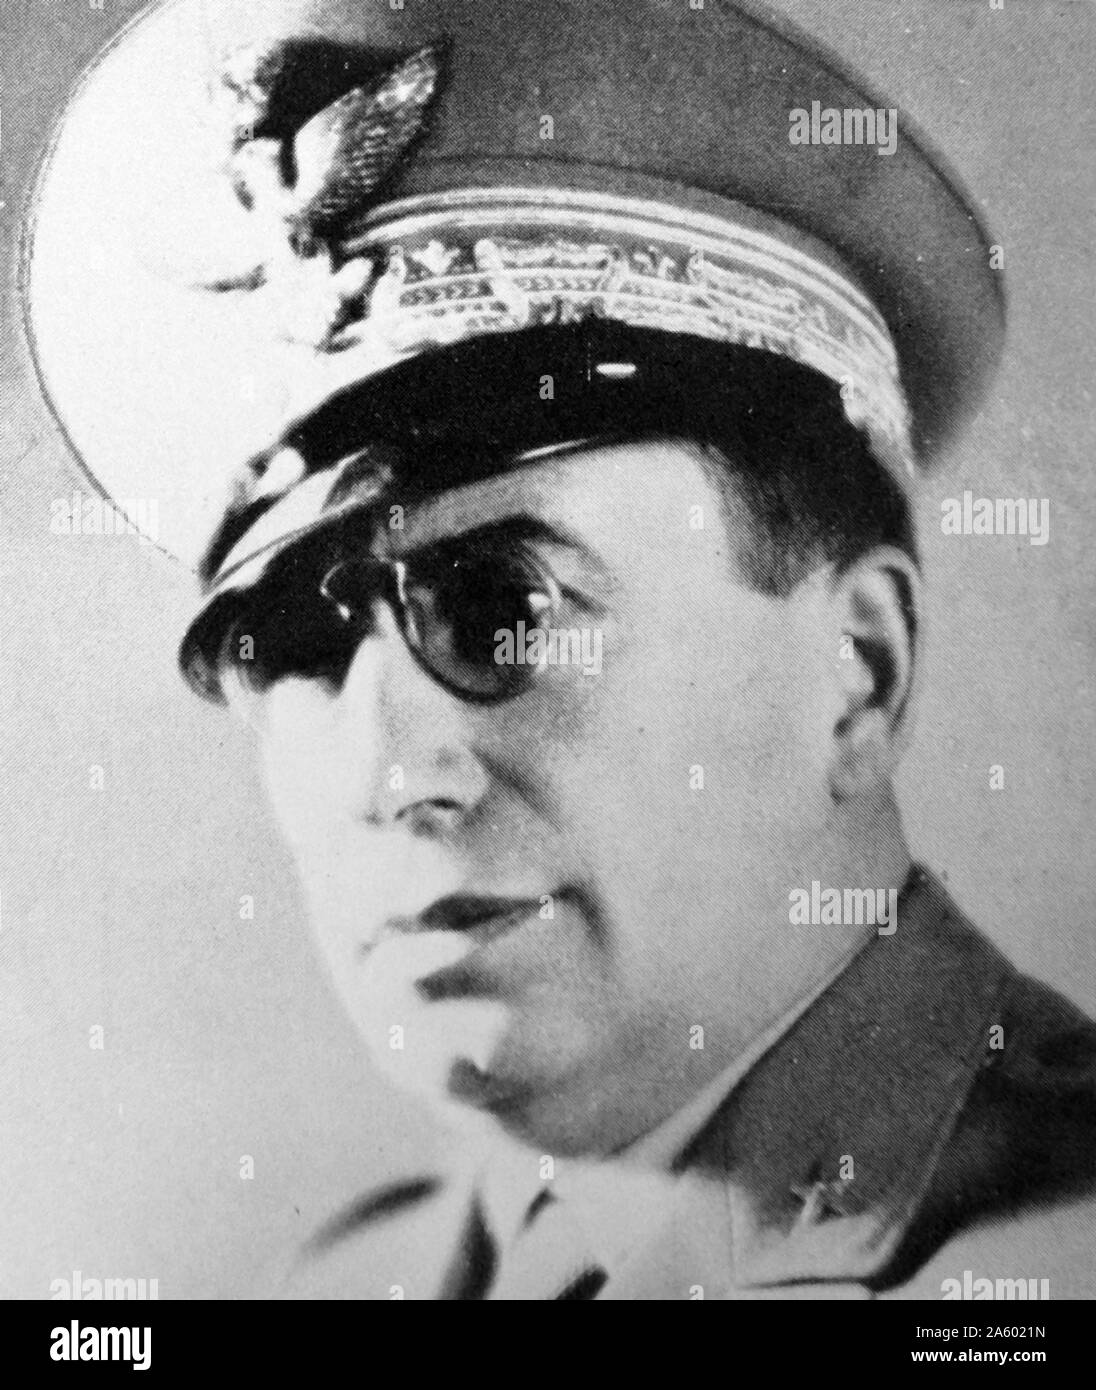 Mario Roatta (1887 – 1968), italienischer General, am bekanntesten für seine Rolle im italienischen 2. Armee Repression gegen die Zivilbevölkerung in den slowenischen und kroatischen bewohnten Gebieten der Italienisch besetzten Jugoslawien während des zweiten Weltkriegs Stockfoto